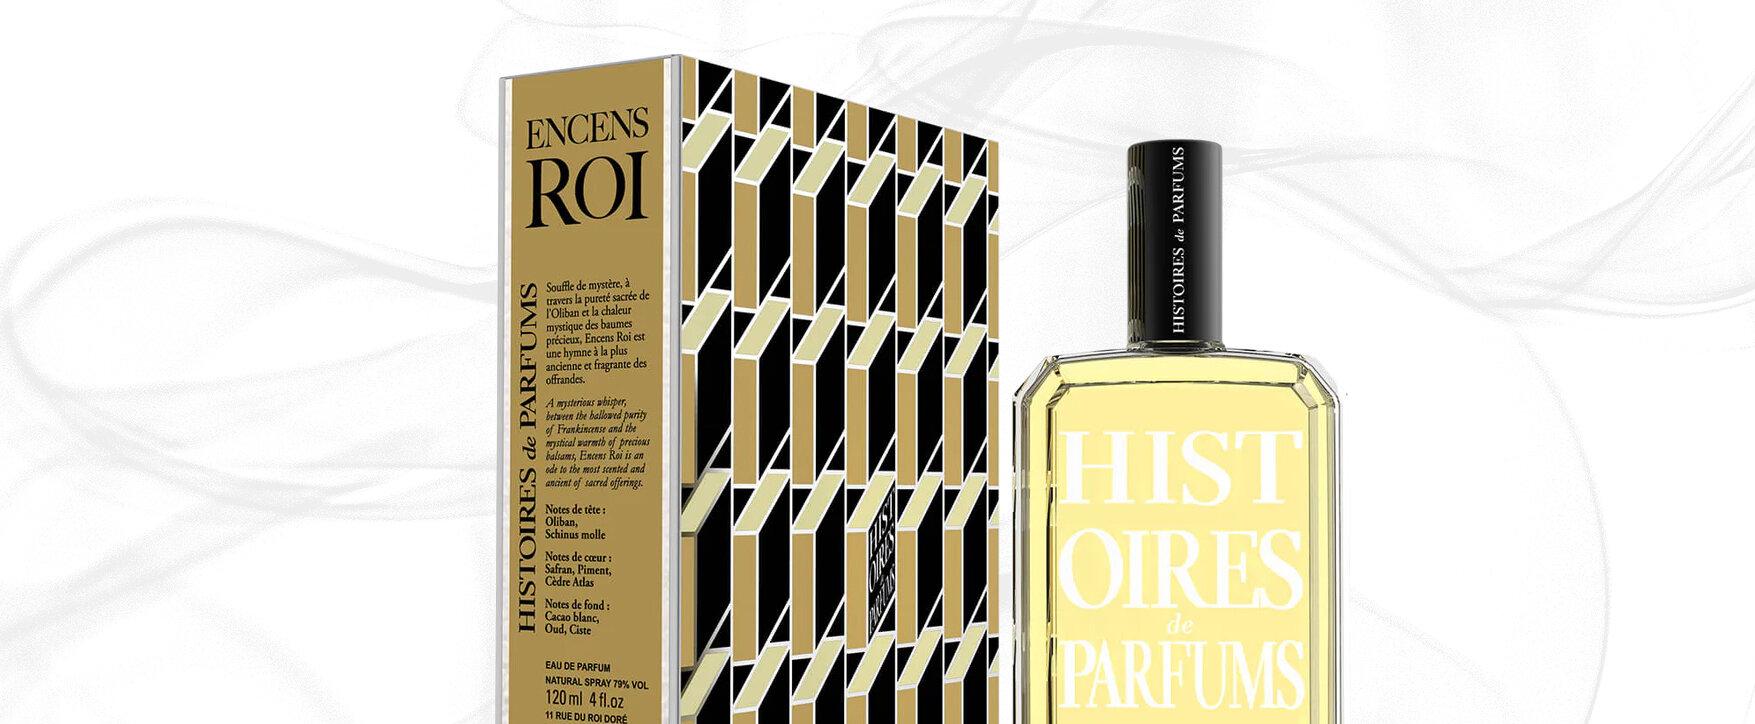 „Encens Roi“ - Histoires de Parfums stellt Weihrauchduft vor